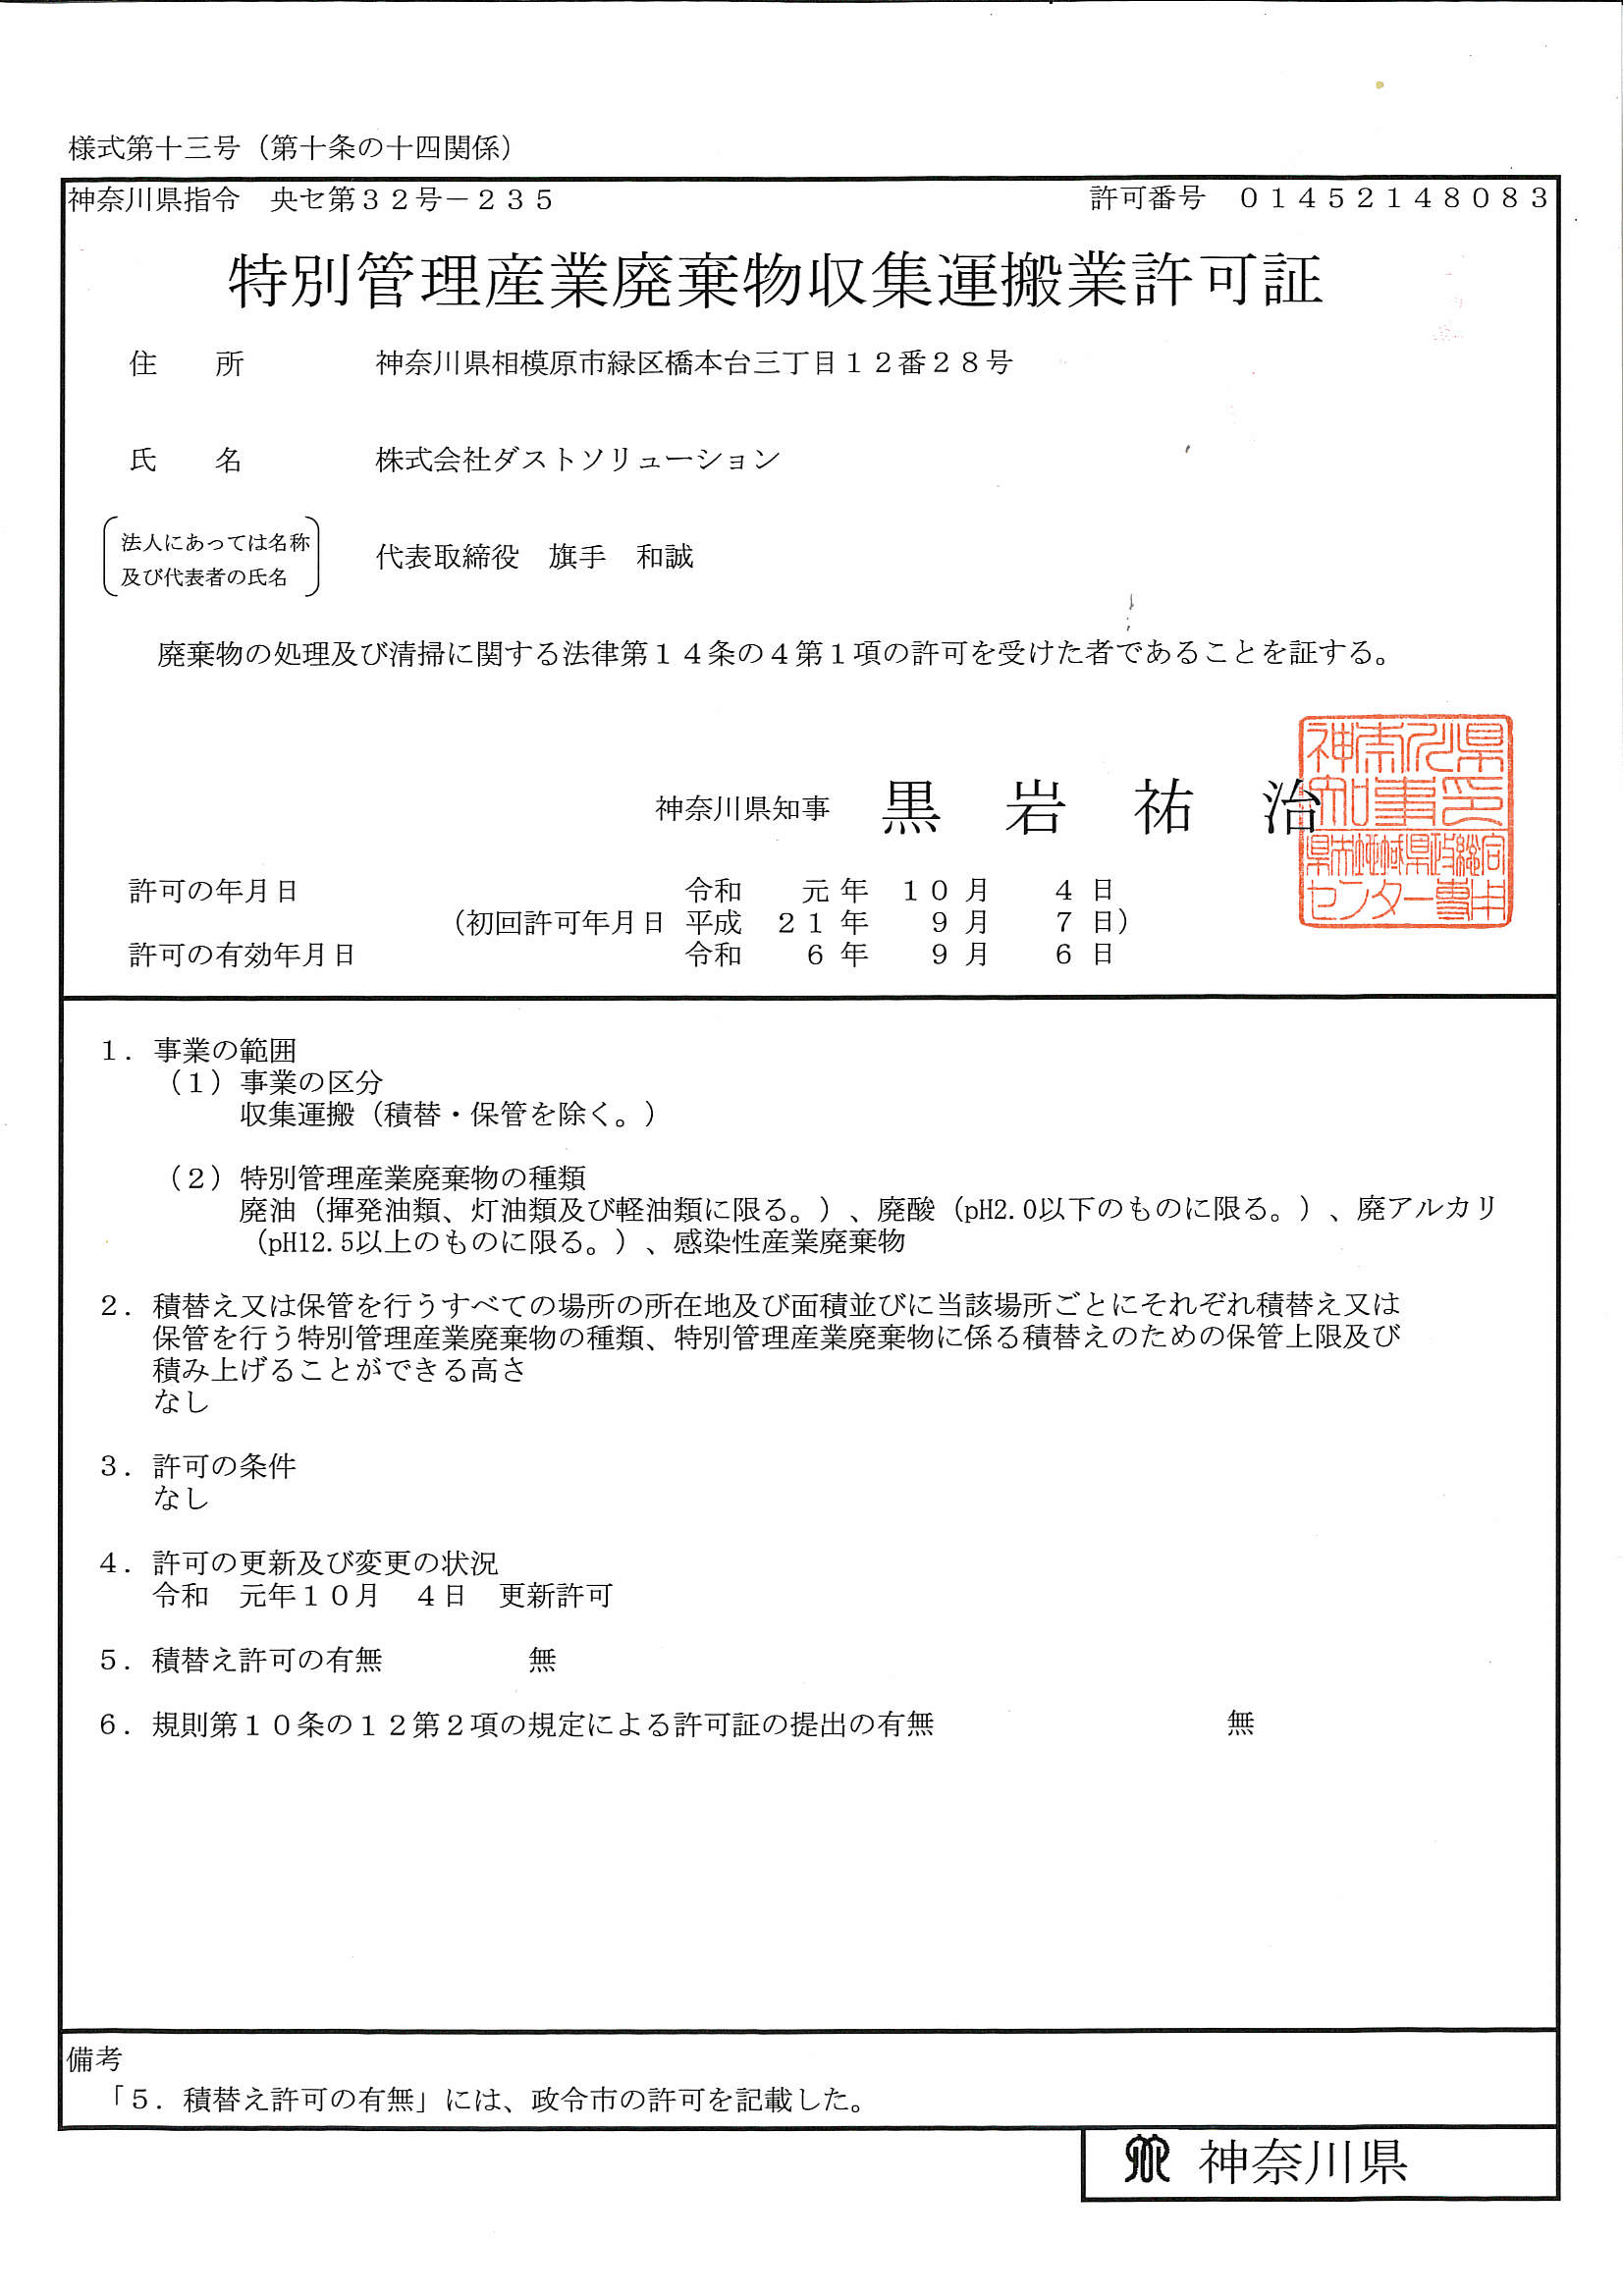 神奈川県特別産業廃棄物収集運搬業許可証